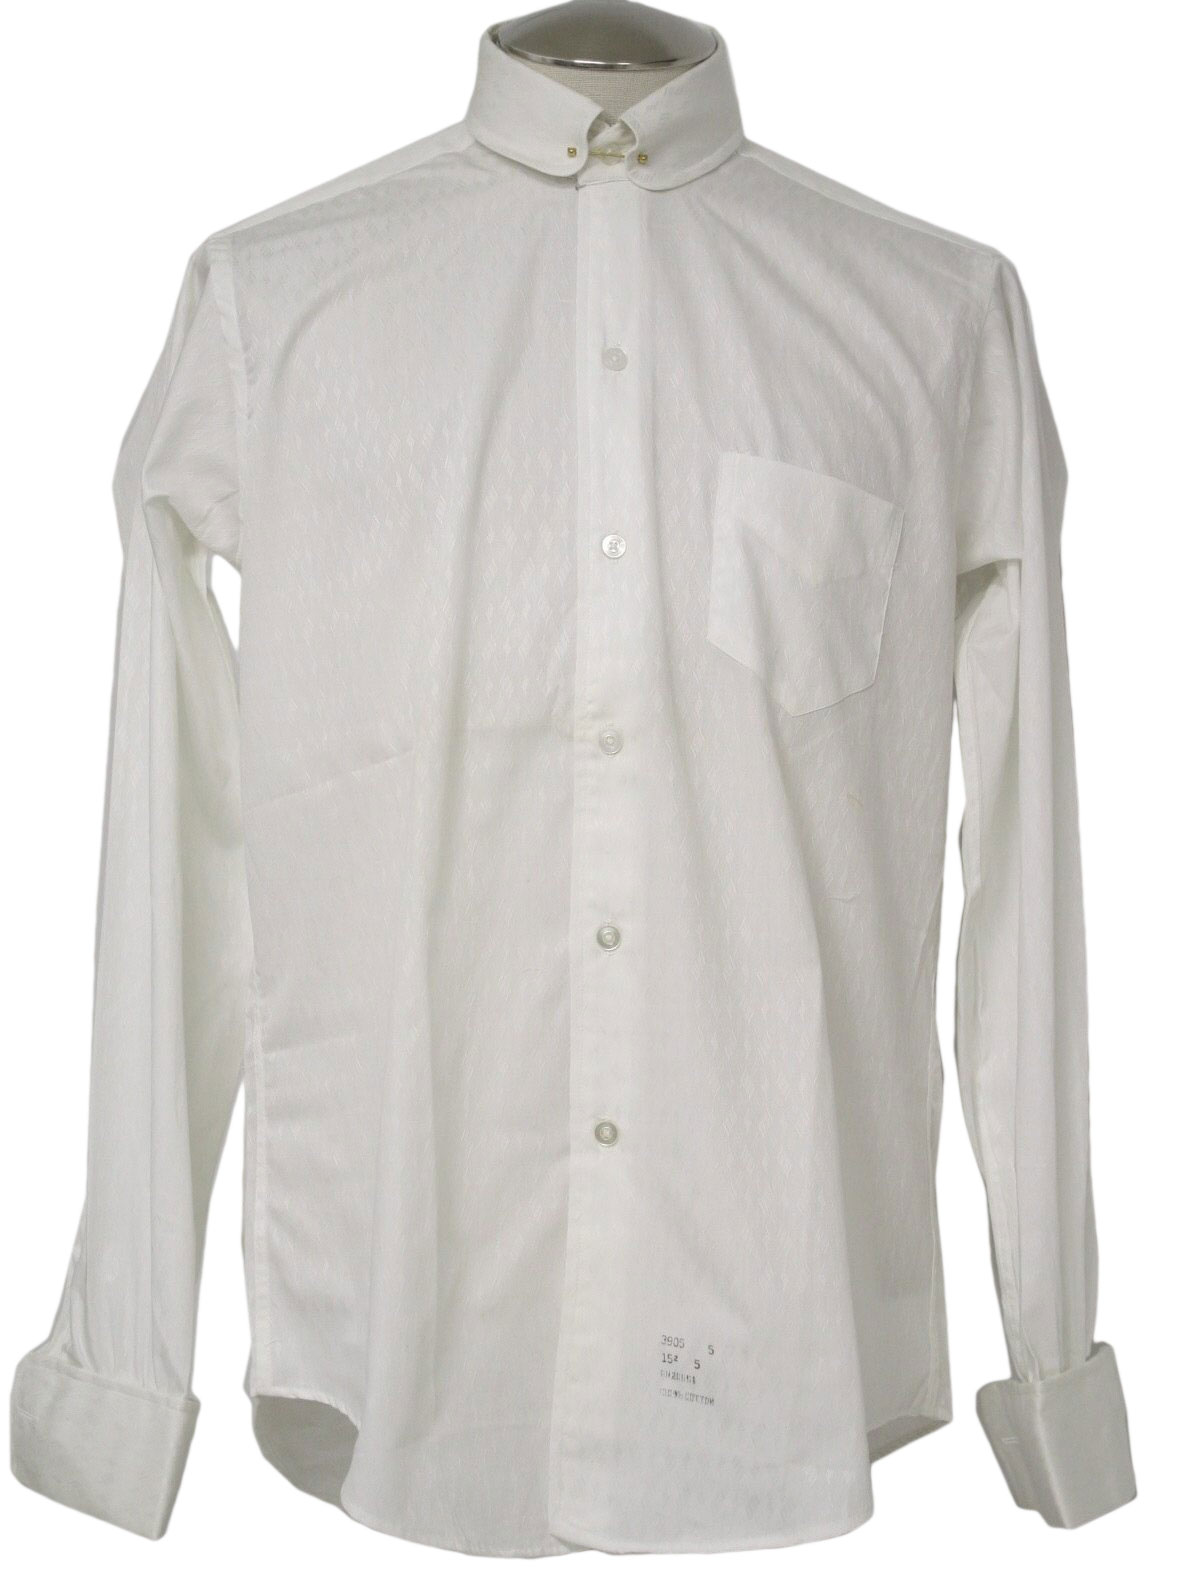 Vintage 60s Shirt: Early 60s -S K Leavitt San Francisco- Mens white